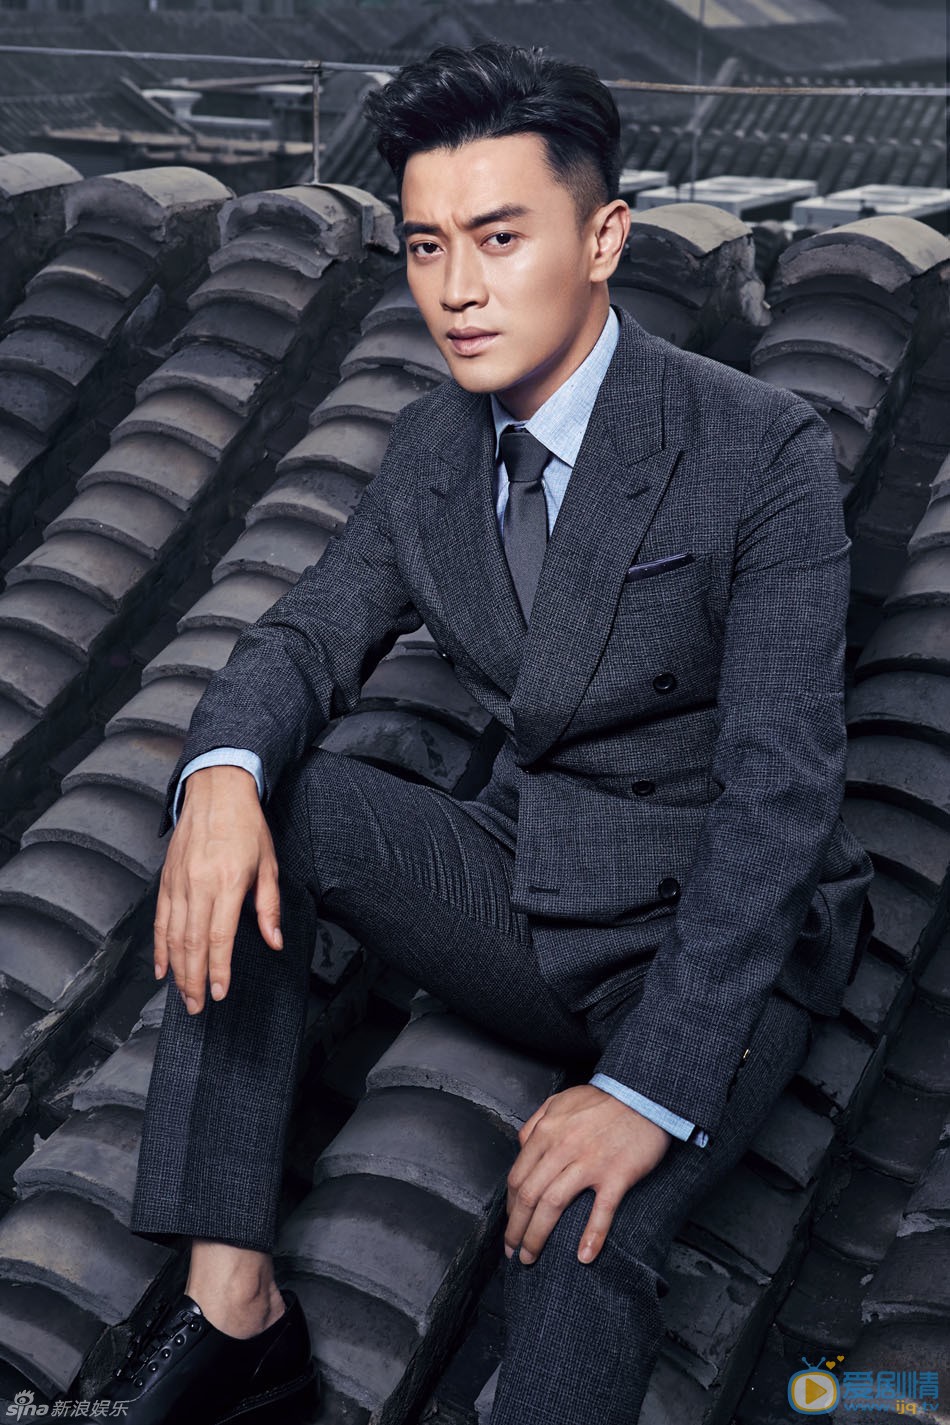 蔣毅新曝光一組時尚西裝大片。有著熟男魅力的他，此次身著黑色西裝搭配淺藍色襯衣，完美詮釋了干練有型的成功精英。